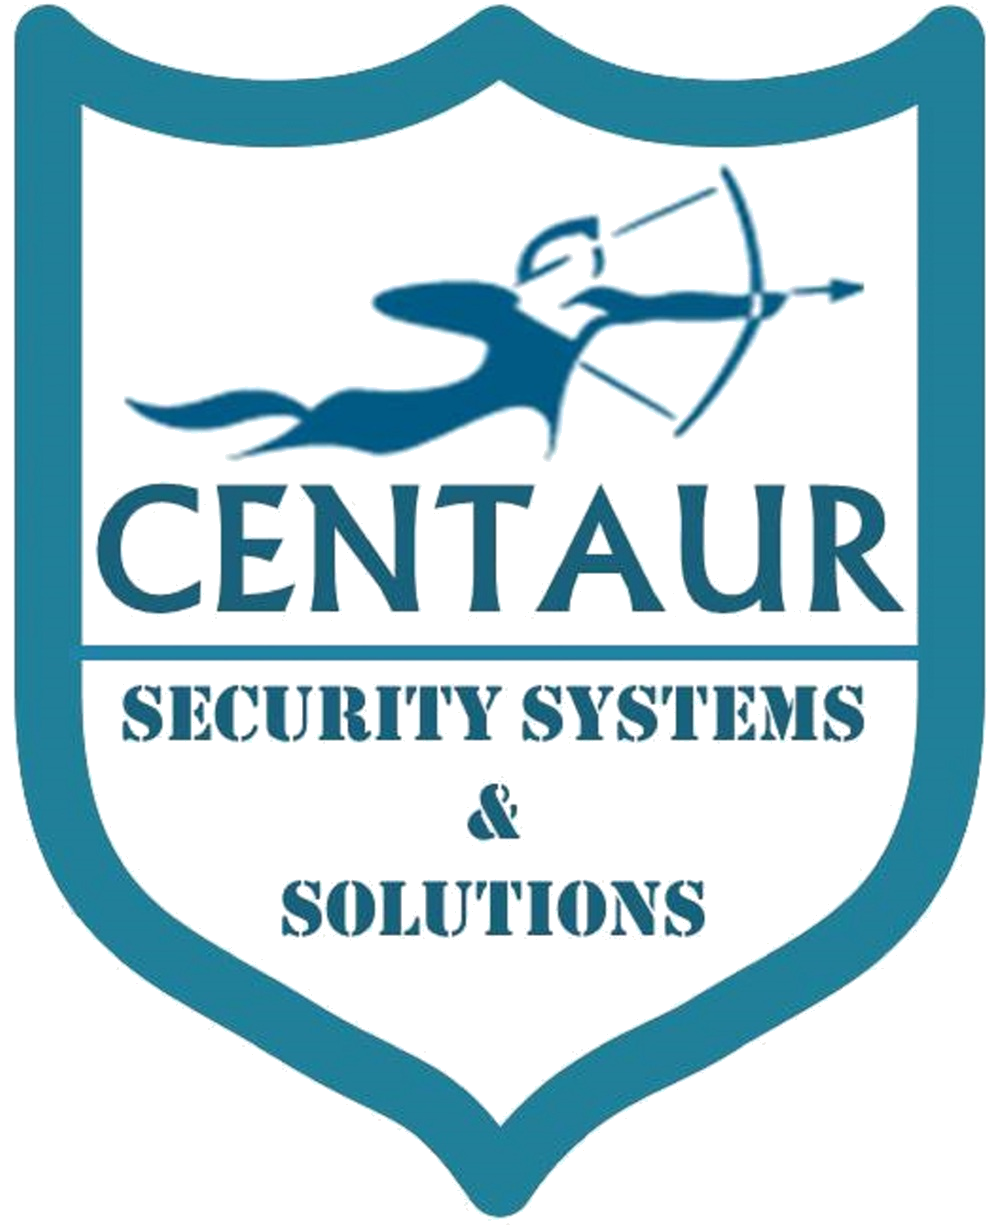 Centaur Security Systems